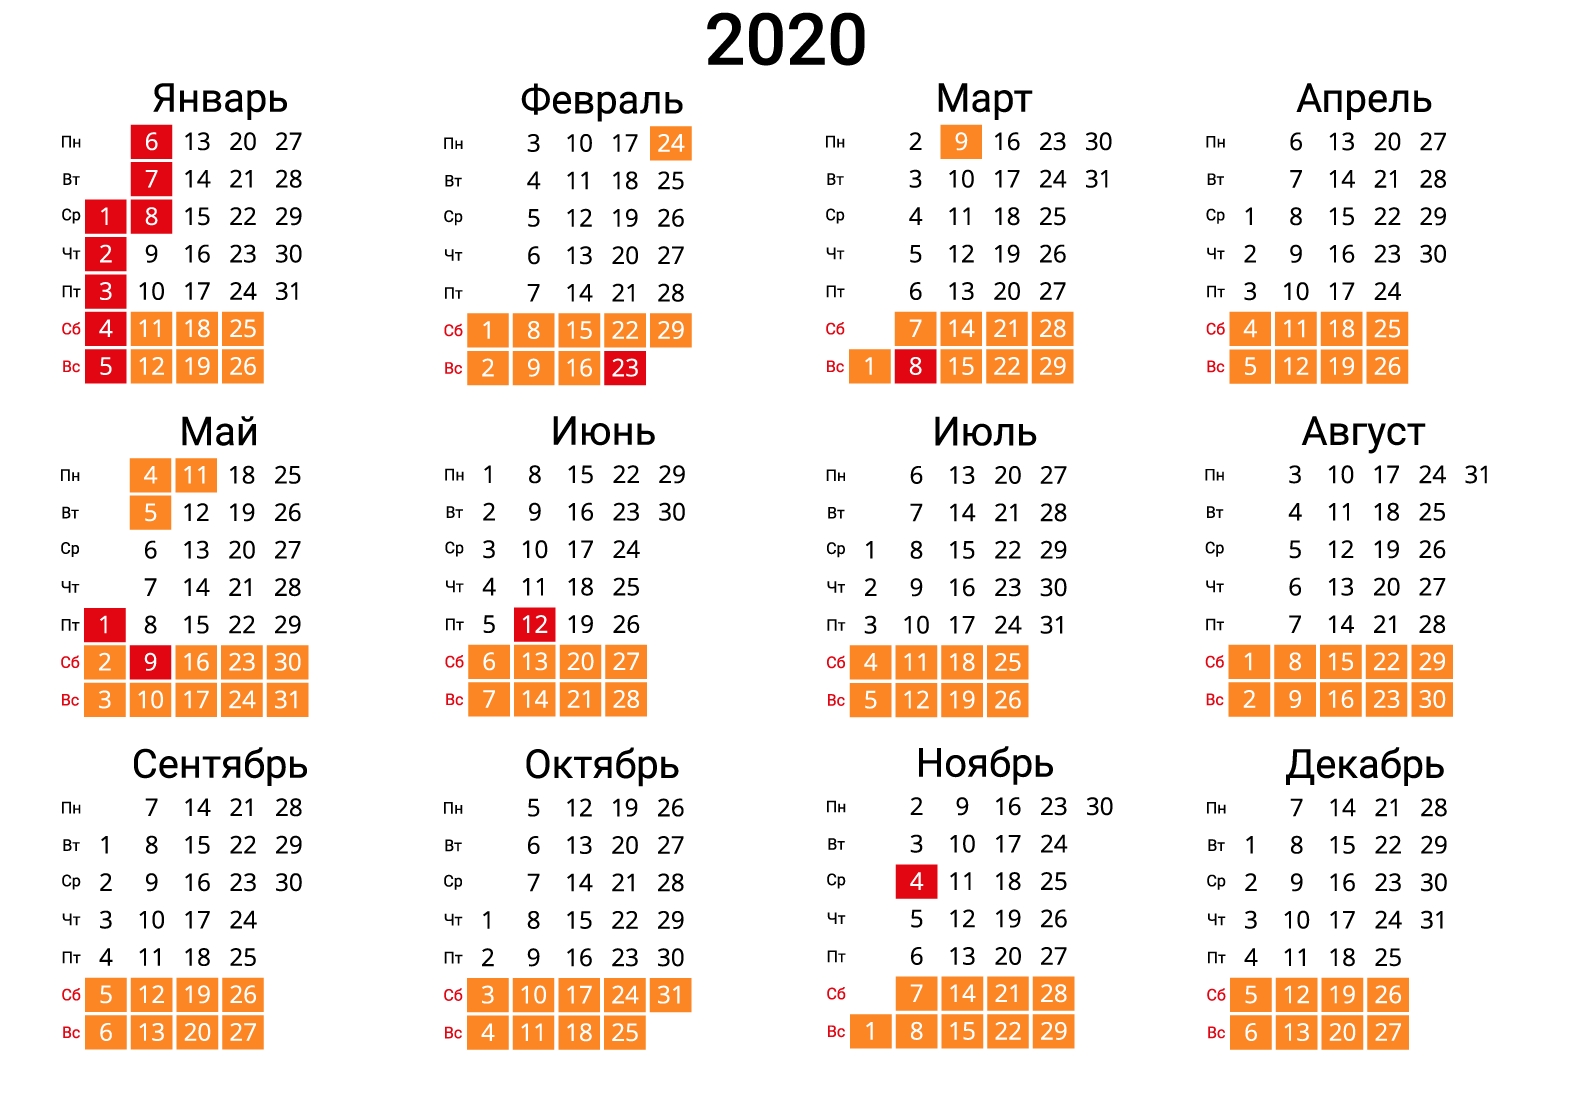 Скачать Календарь На 2020 Год В Форматах: Word, Pdf, Jpg